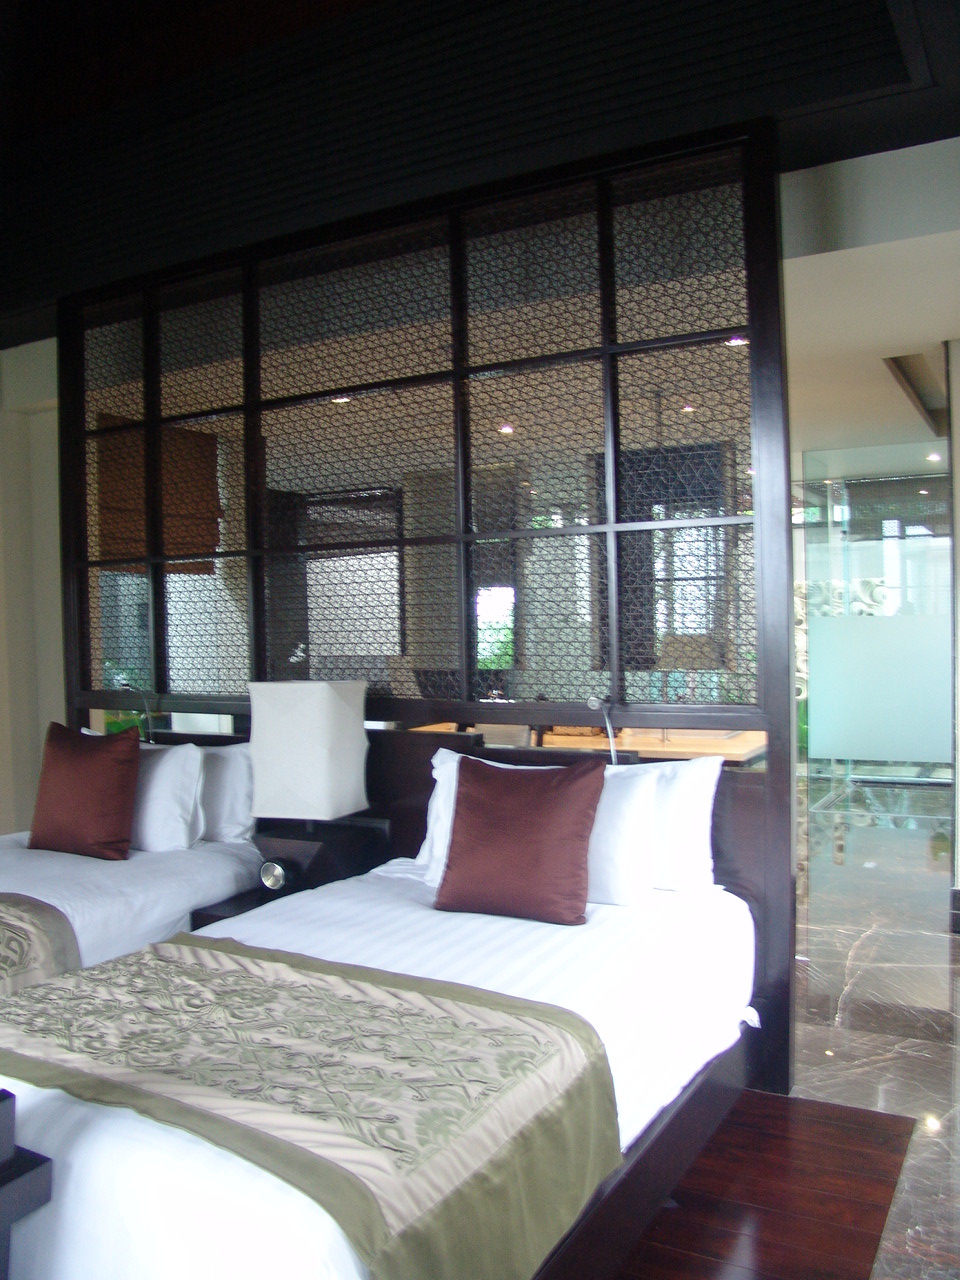 巴厘岛--悦榕庄度假酒店高清照片_巴厘岛--悦榕庄55.JPG